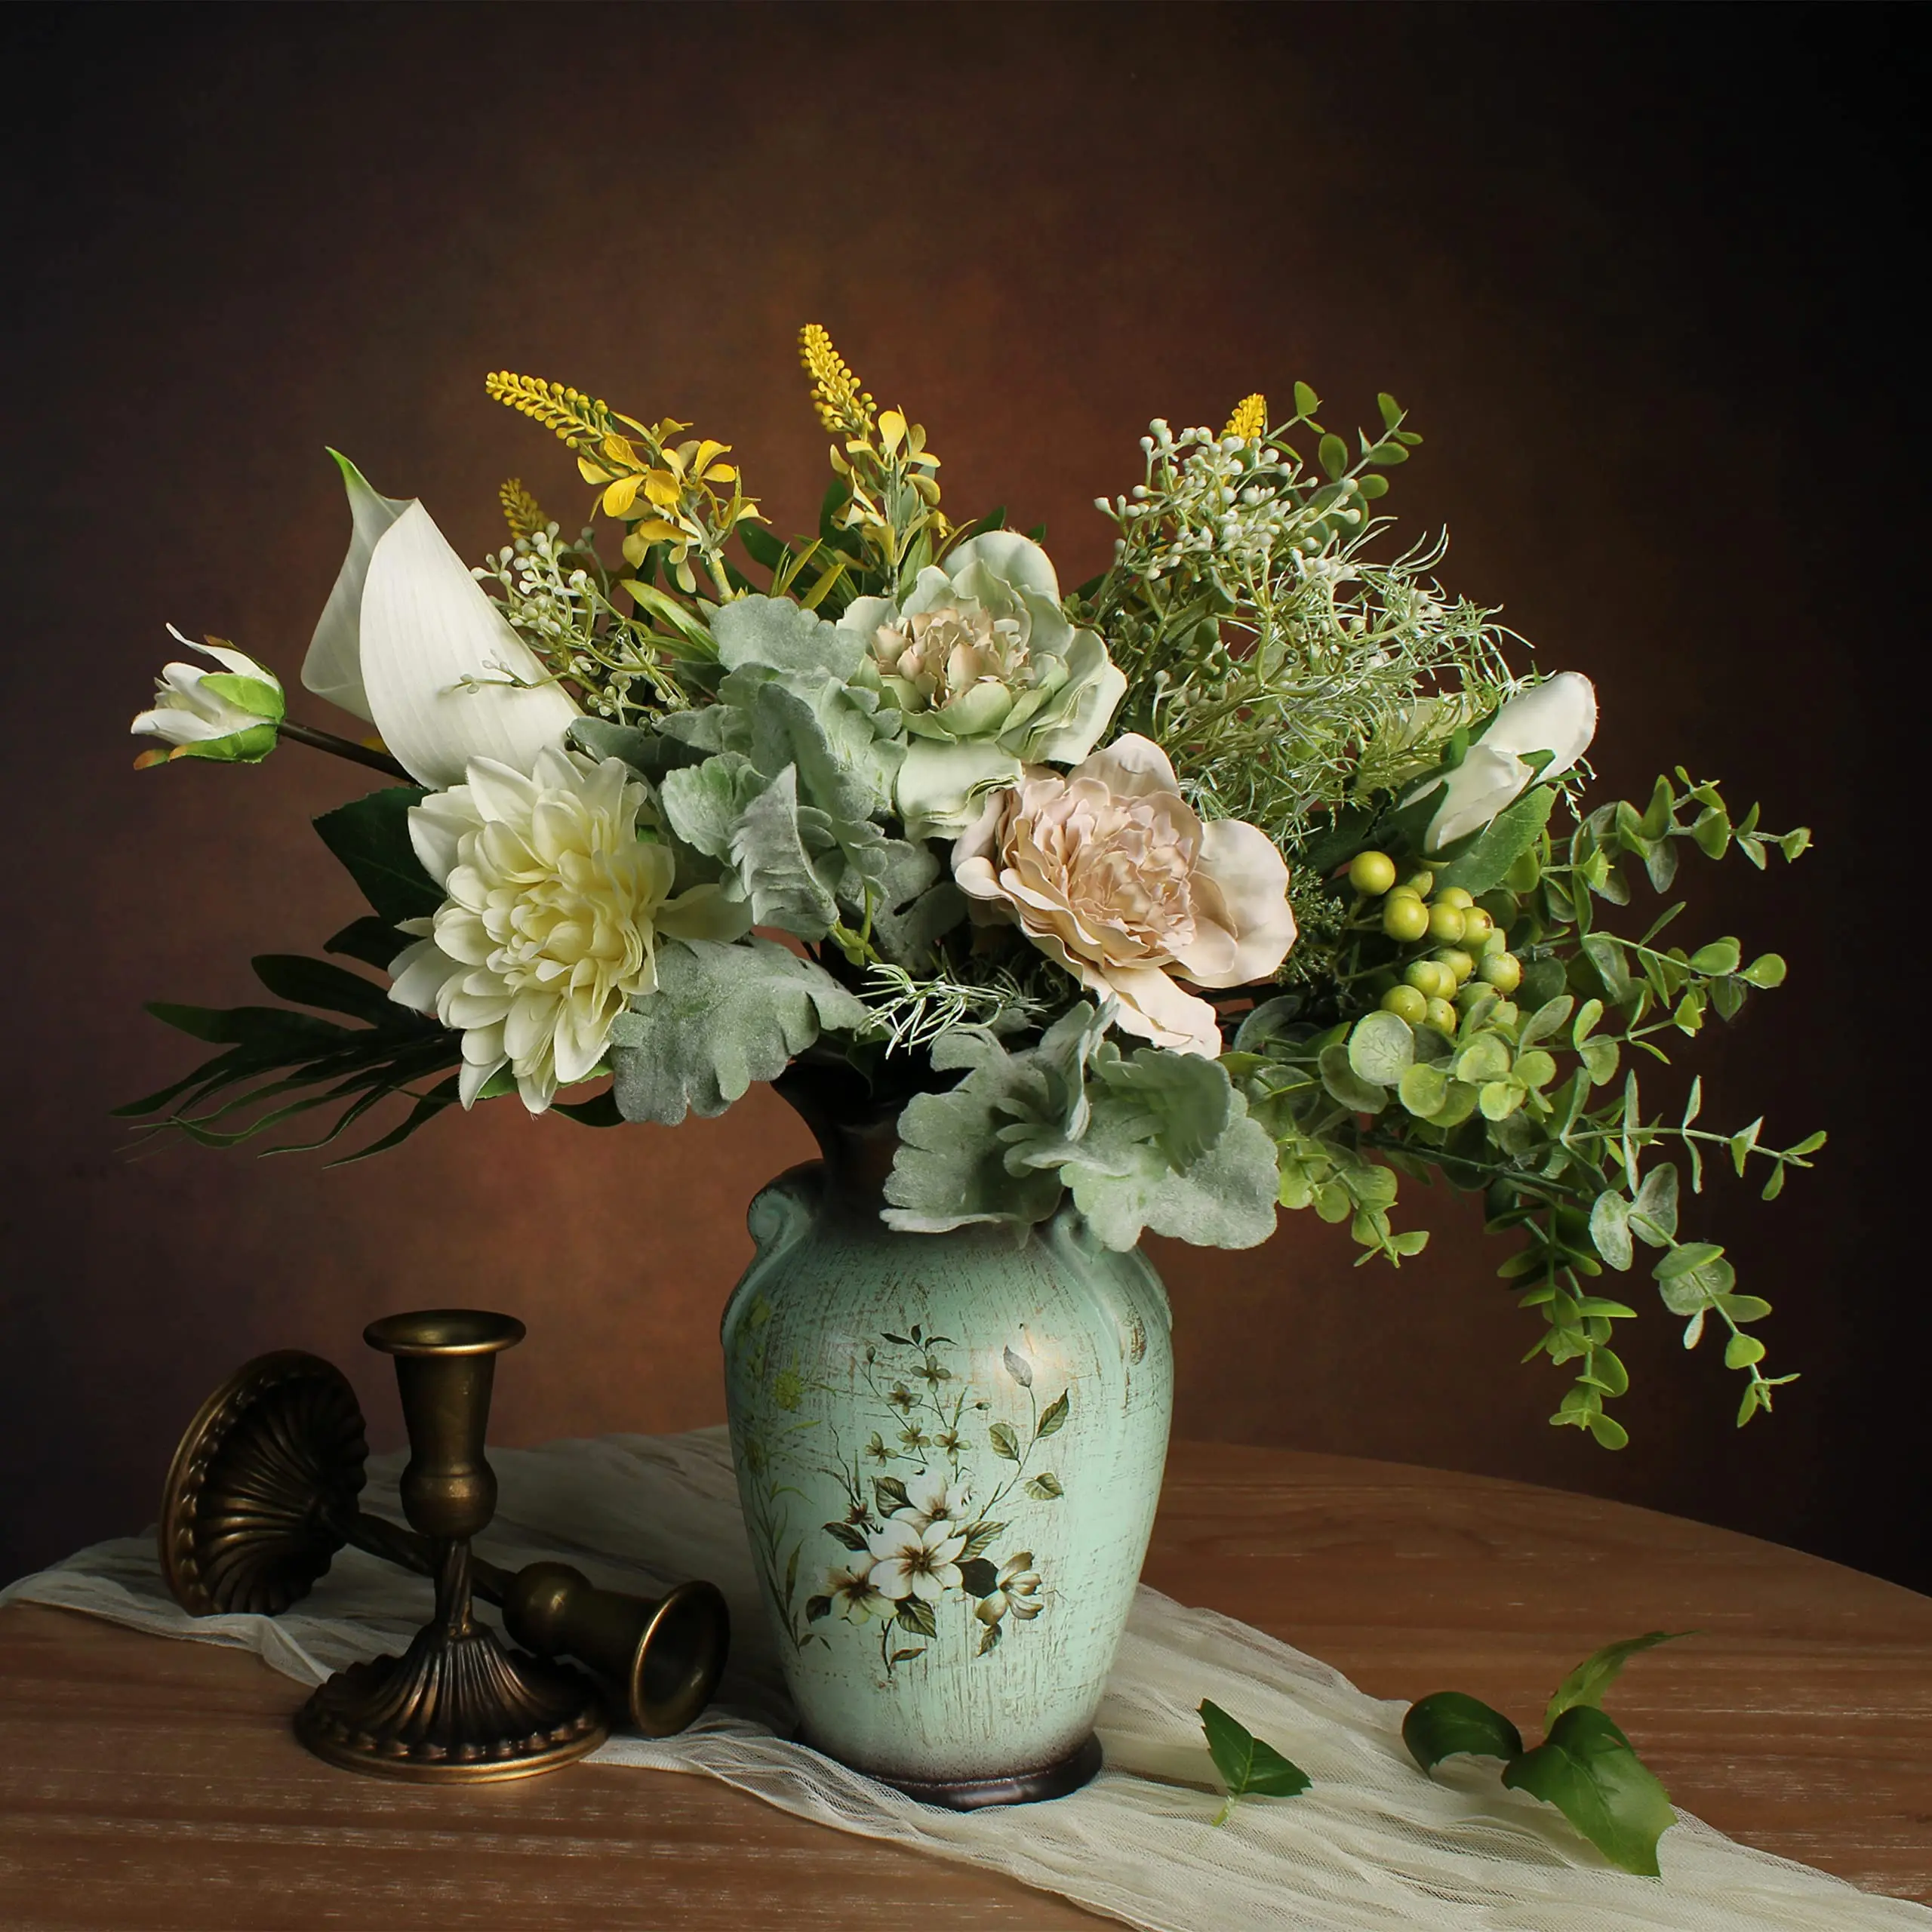 Vasi con fiori finti moderni: idee per decorare